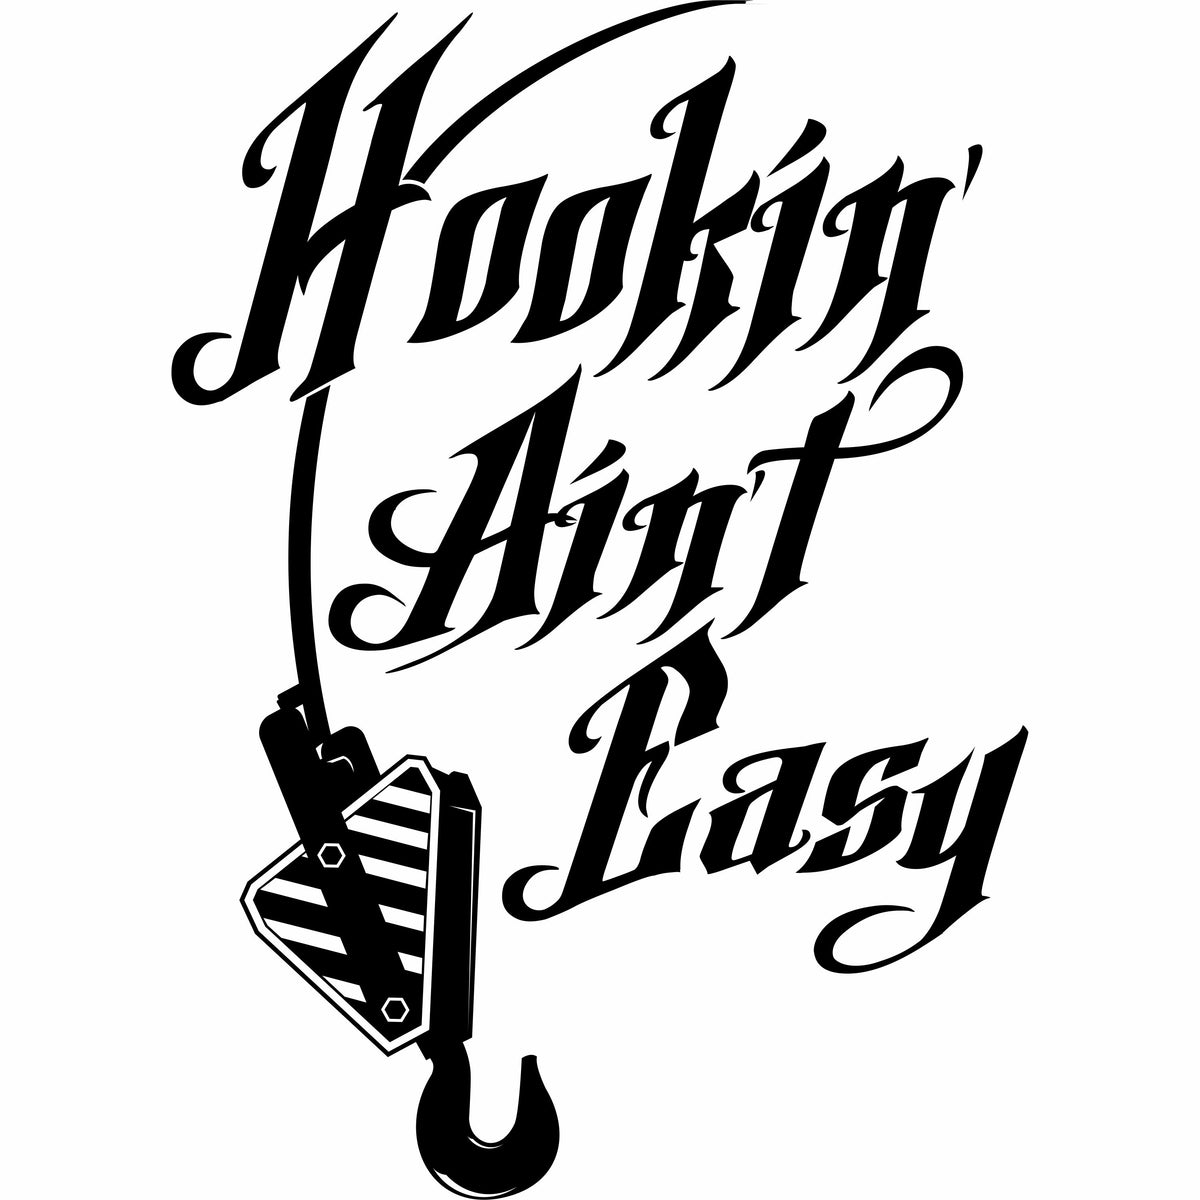 Hookin' Ain't Easy Crane Op & Rigger Vinyl Decal